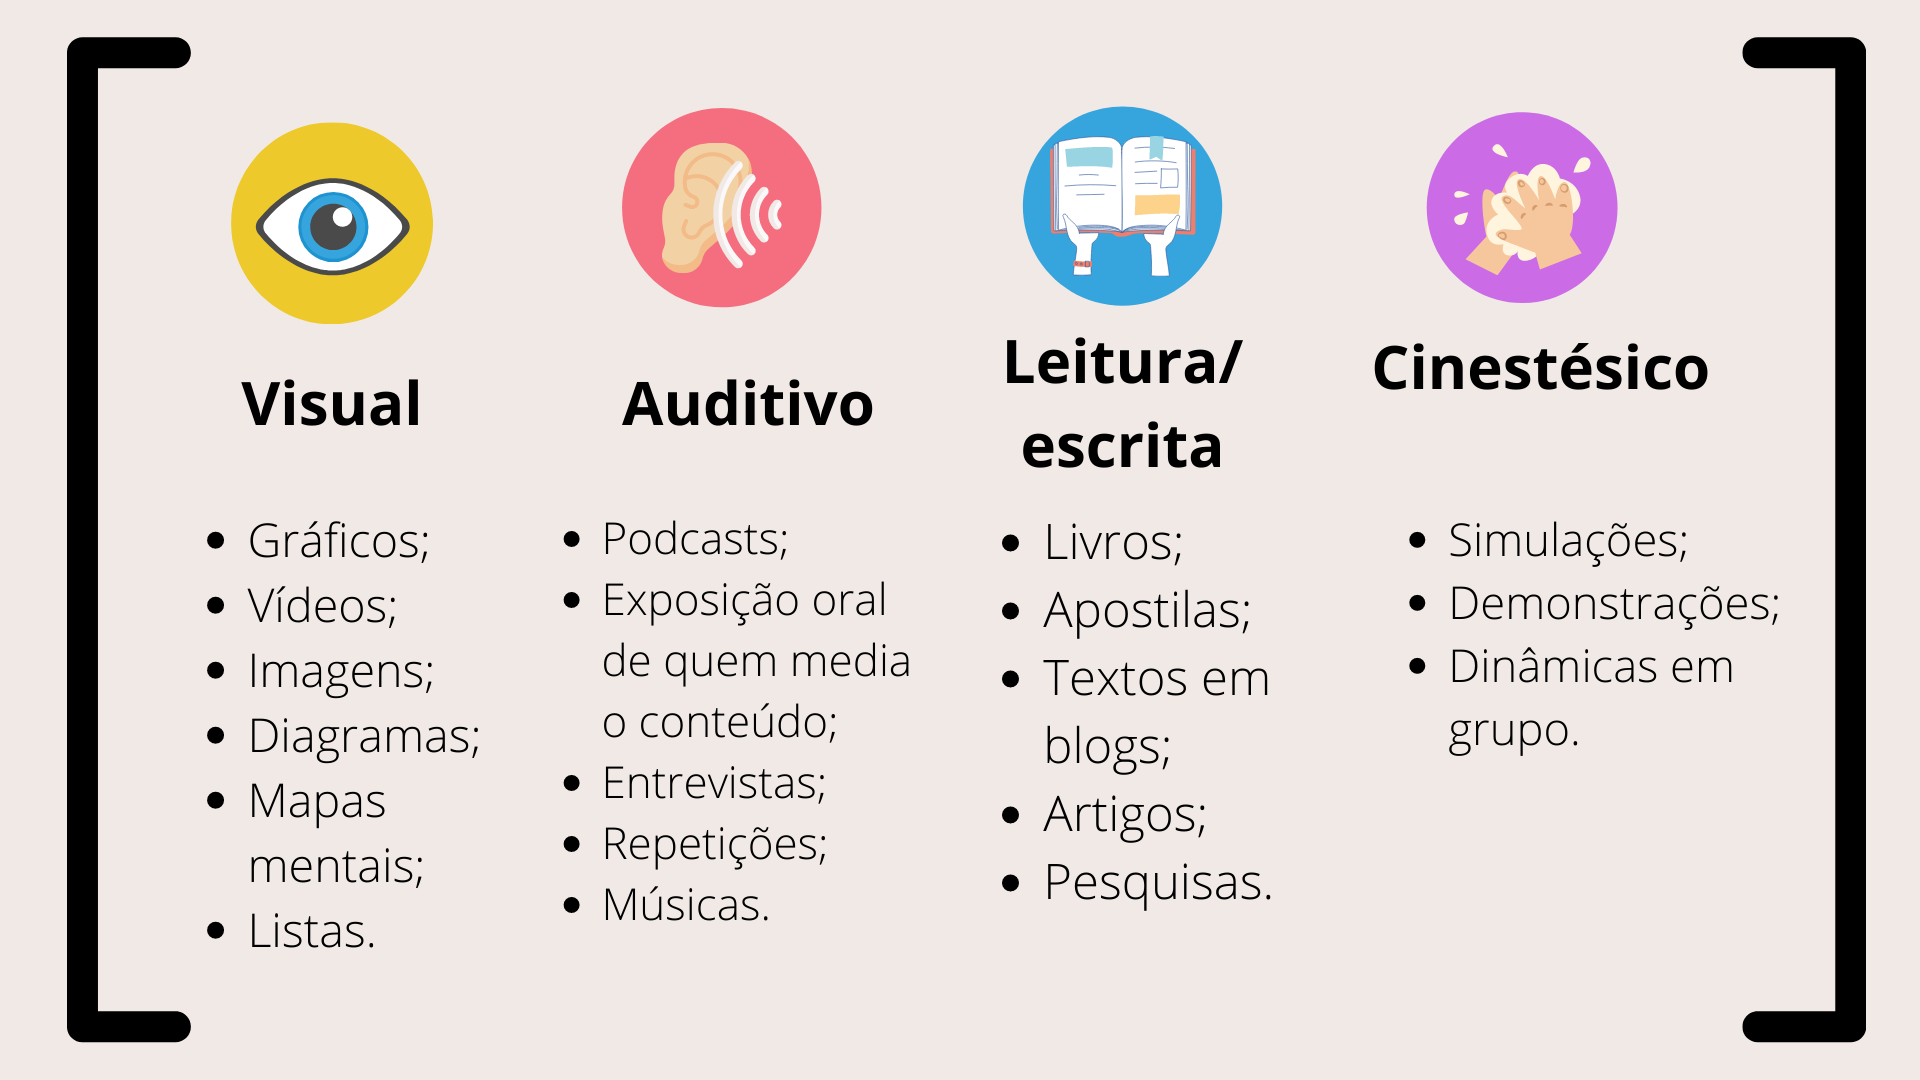 Uma imagem com descrição dos diferentes tipos de aprendizagem: visual, auditivo, leitura/escrita e o cinestésico.